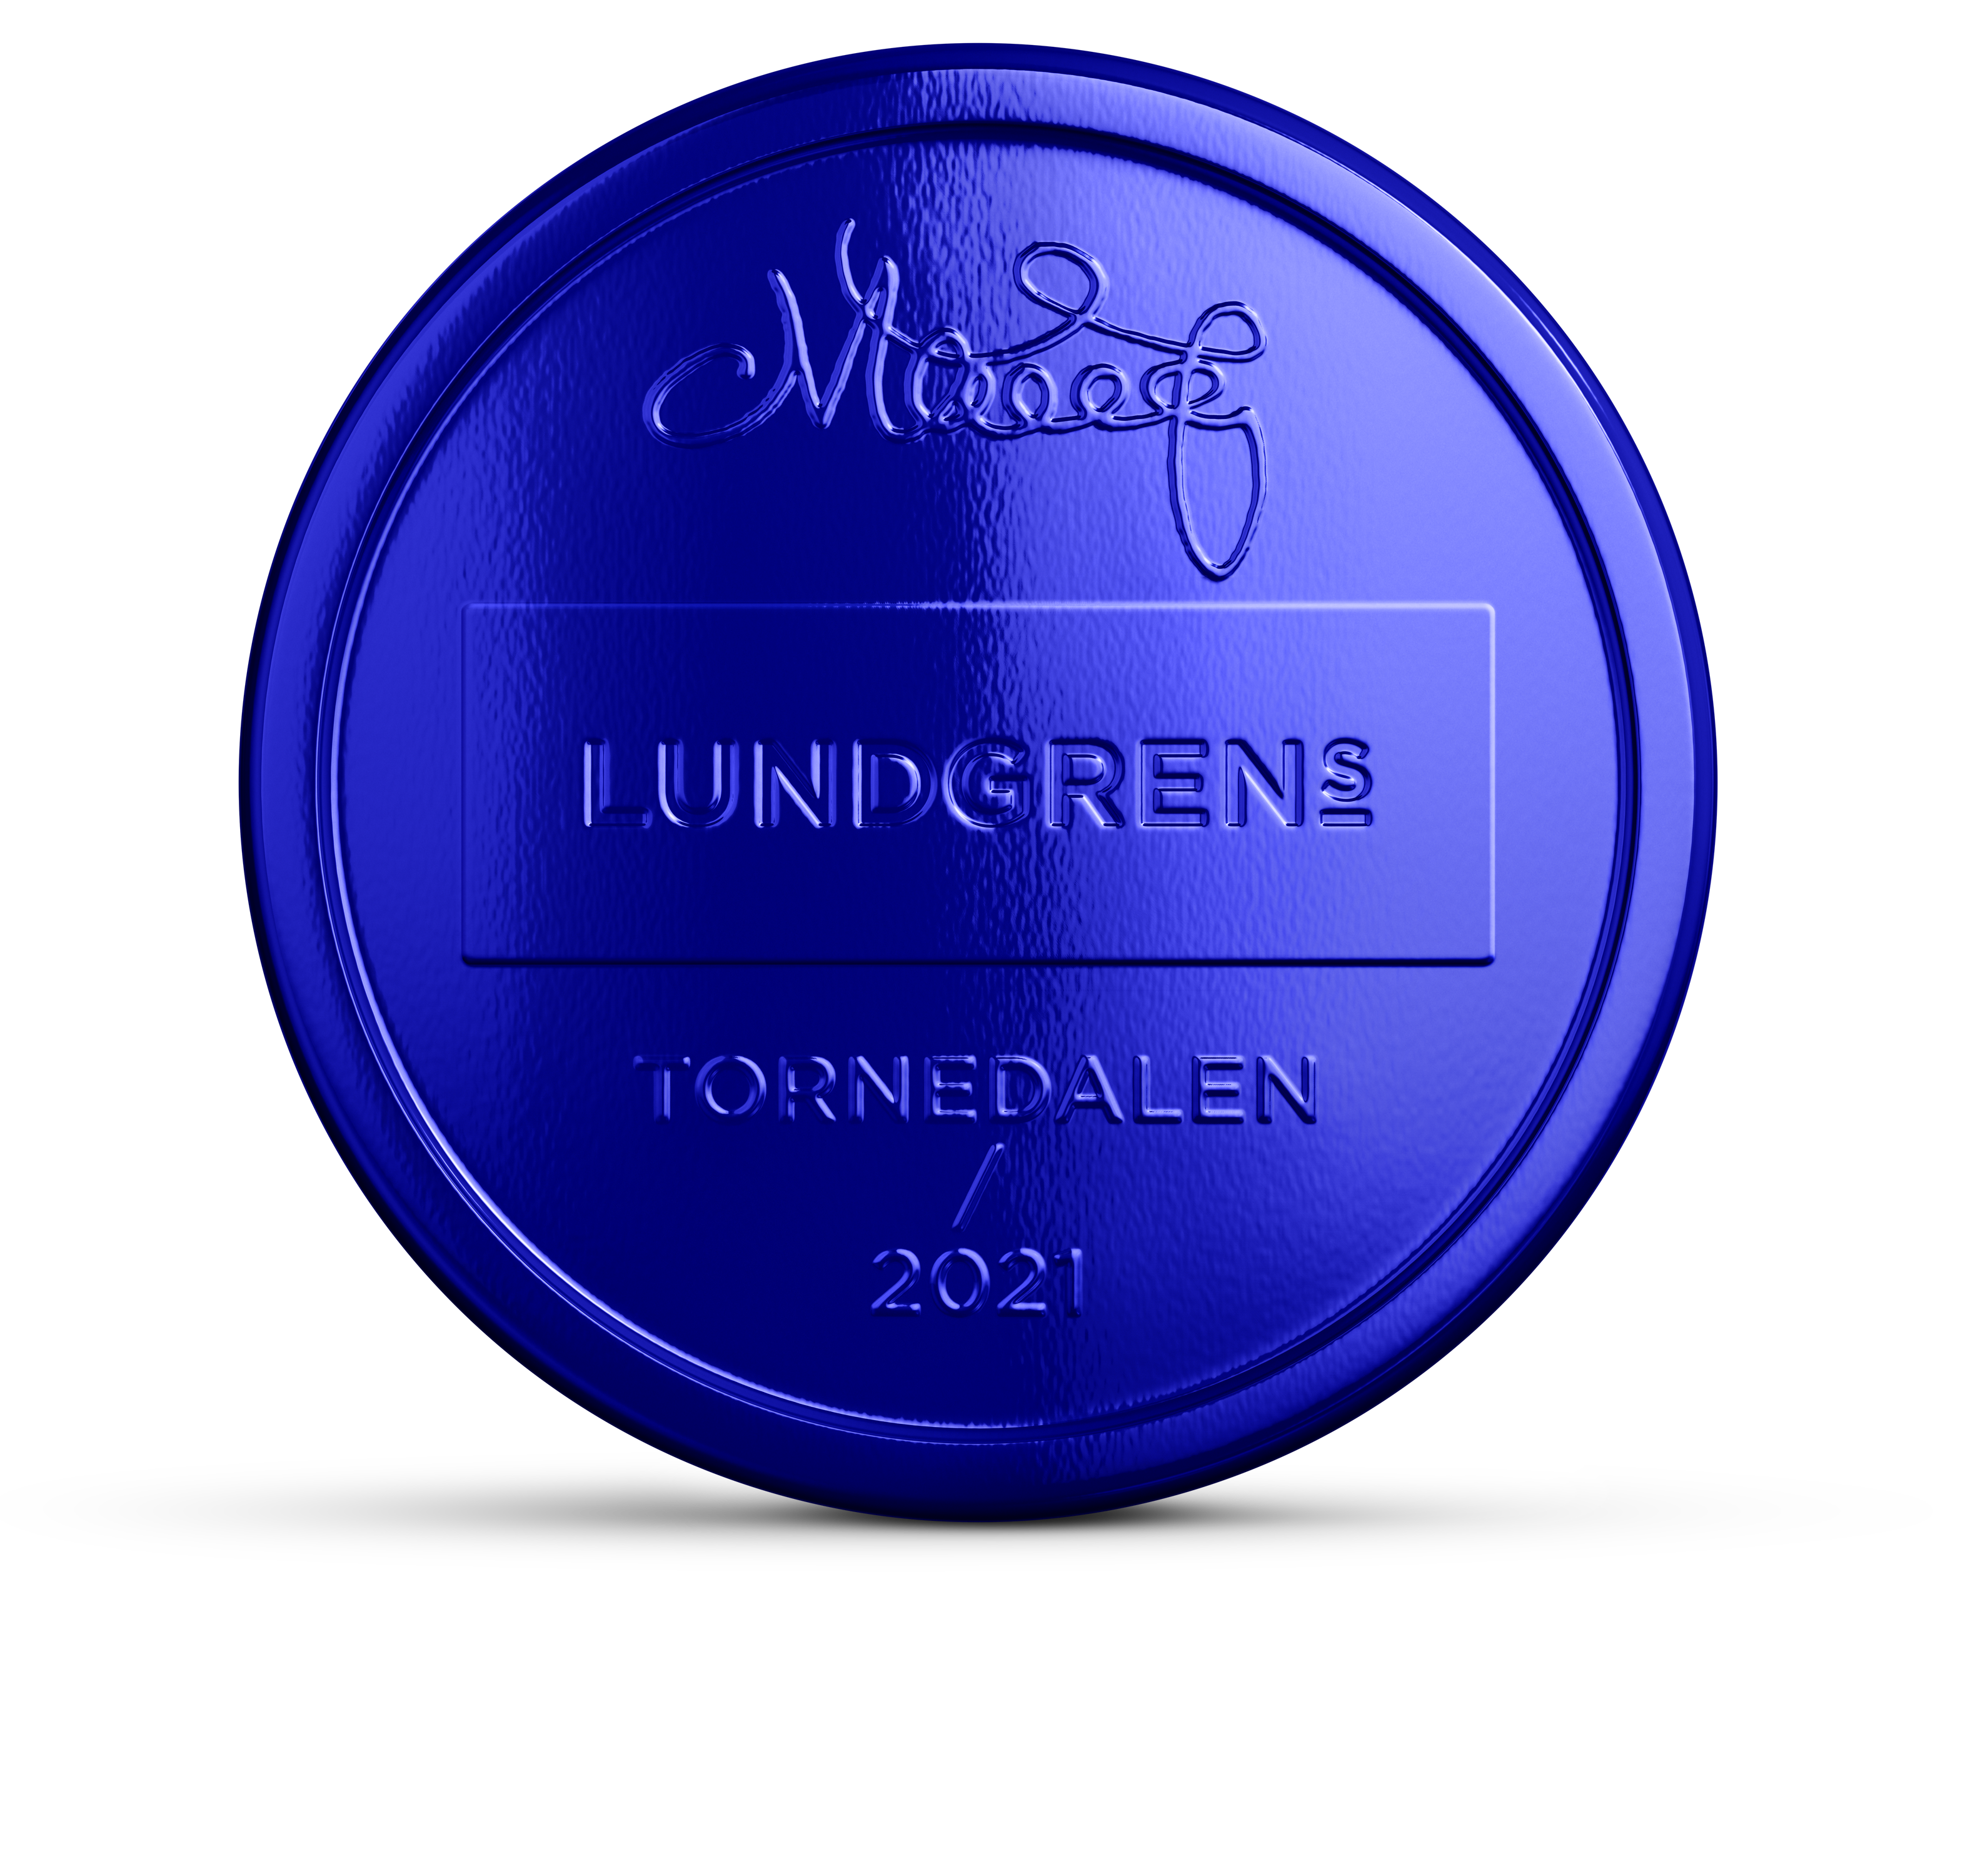 lundgrens tornedalen limited edition 2021